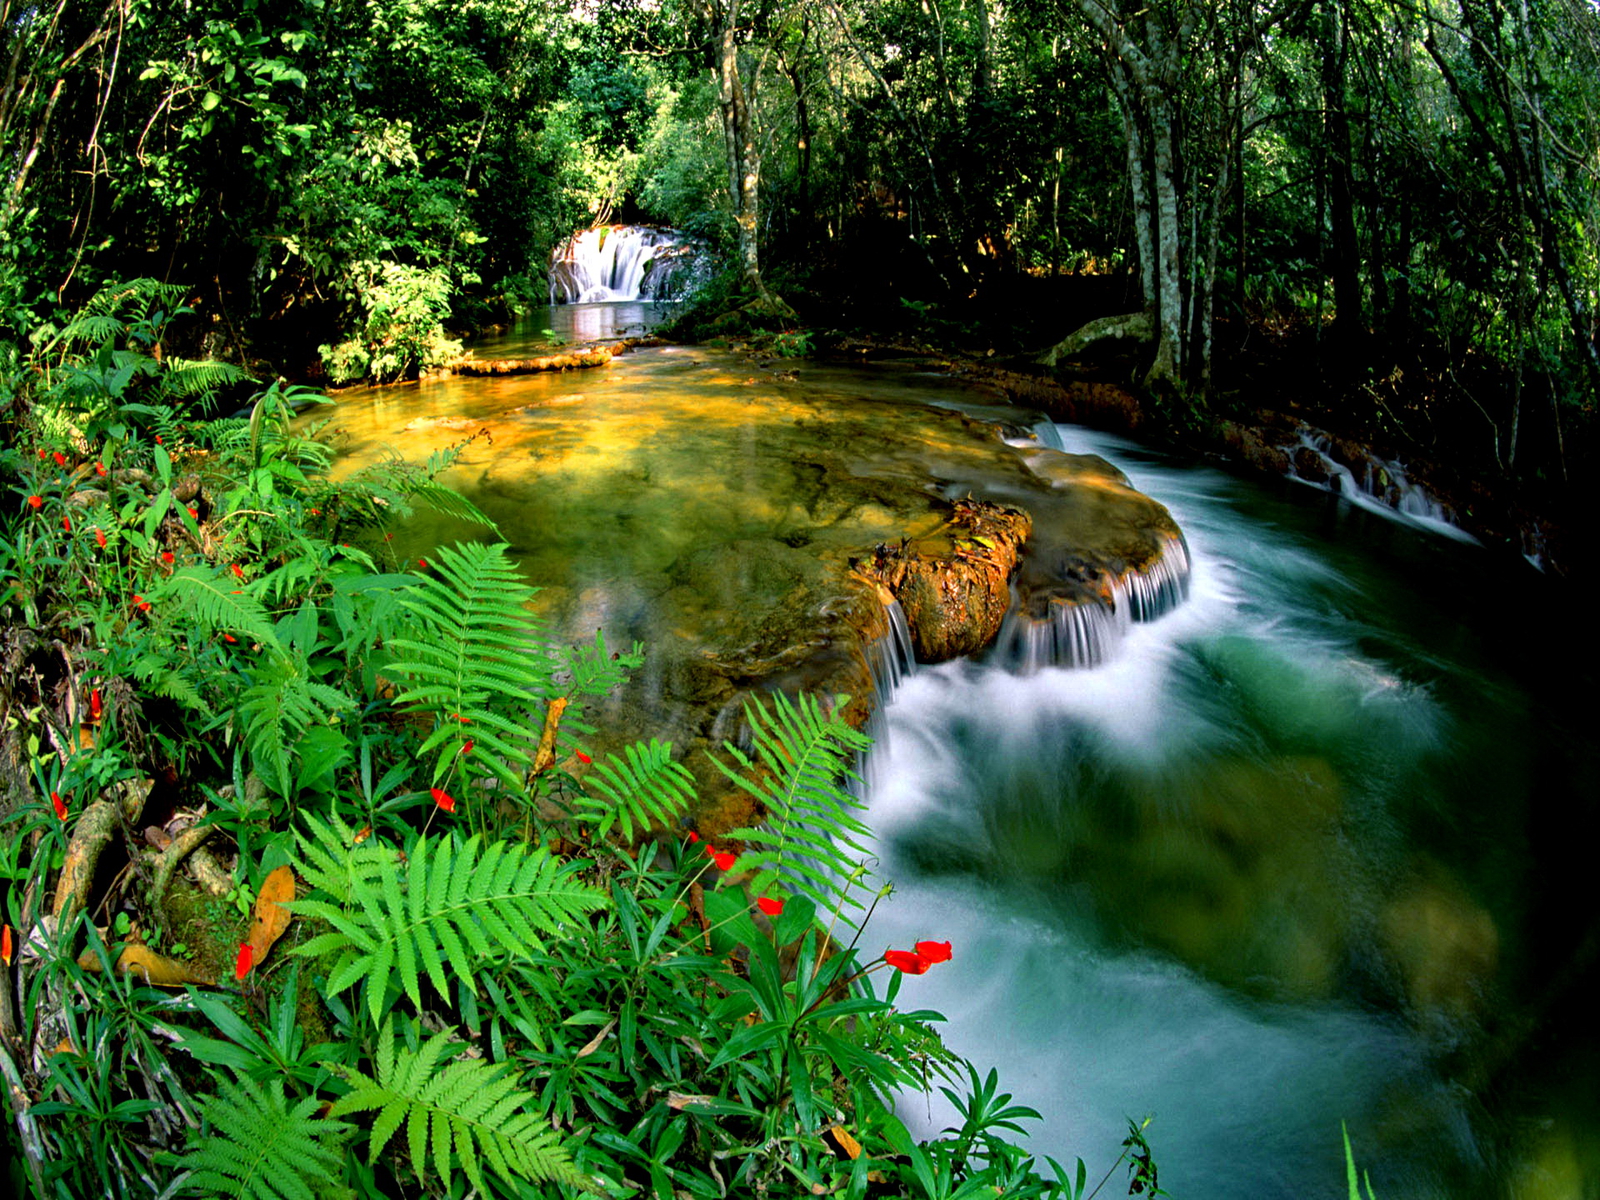 ジャングル壁紙hd,自然の風景,自然,水域,水資源,水路